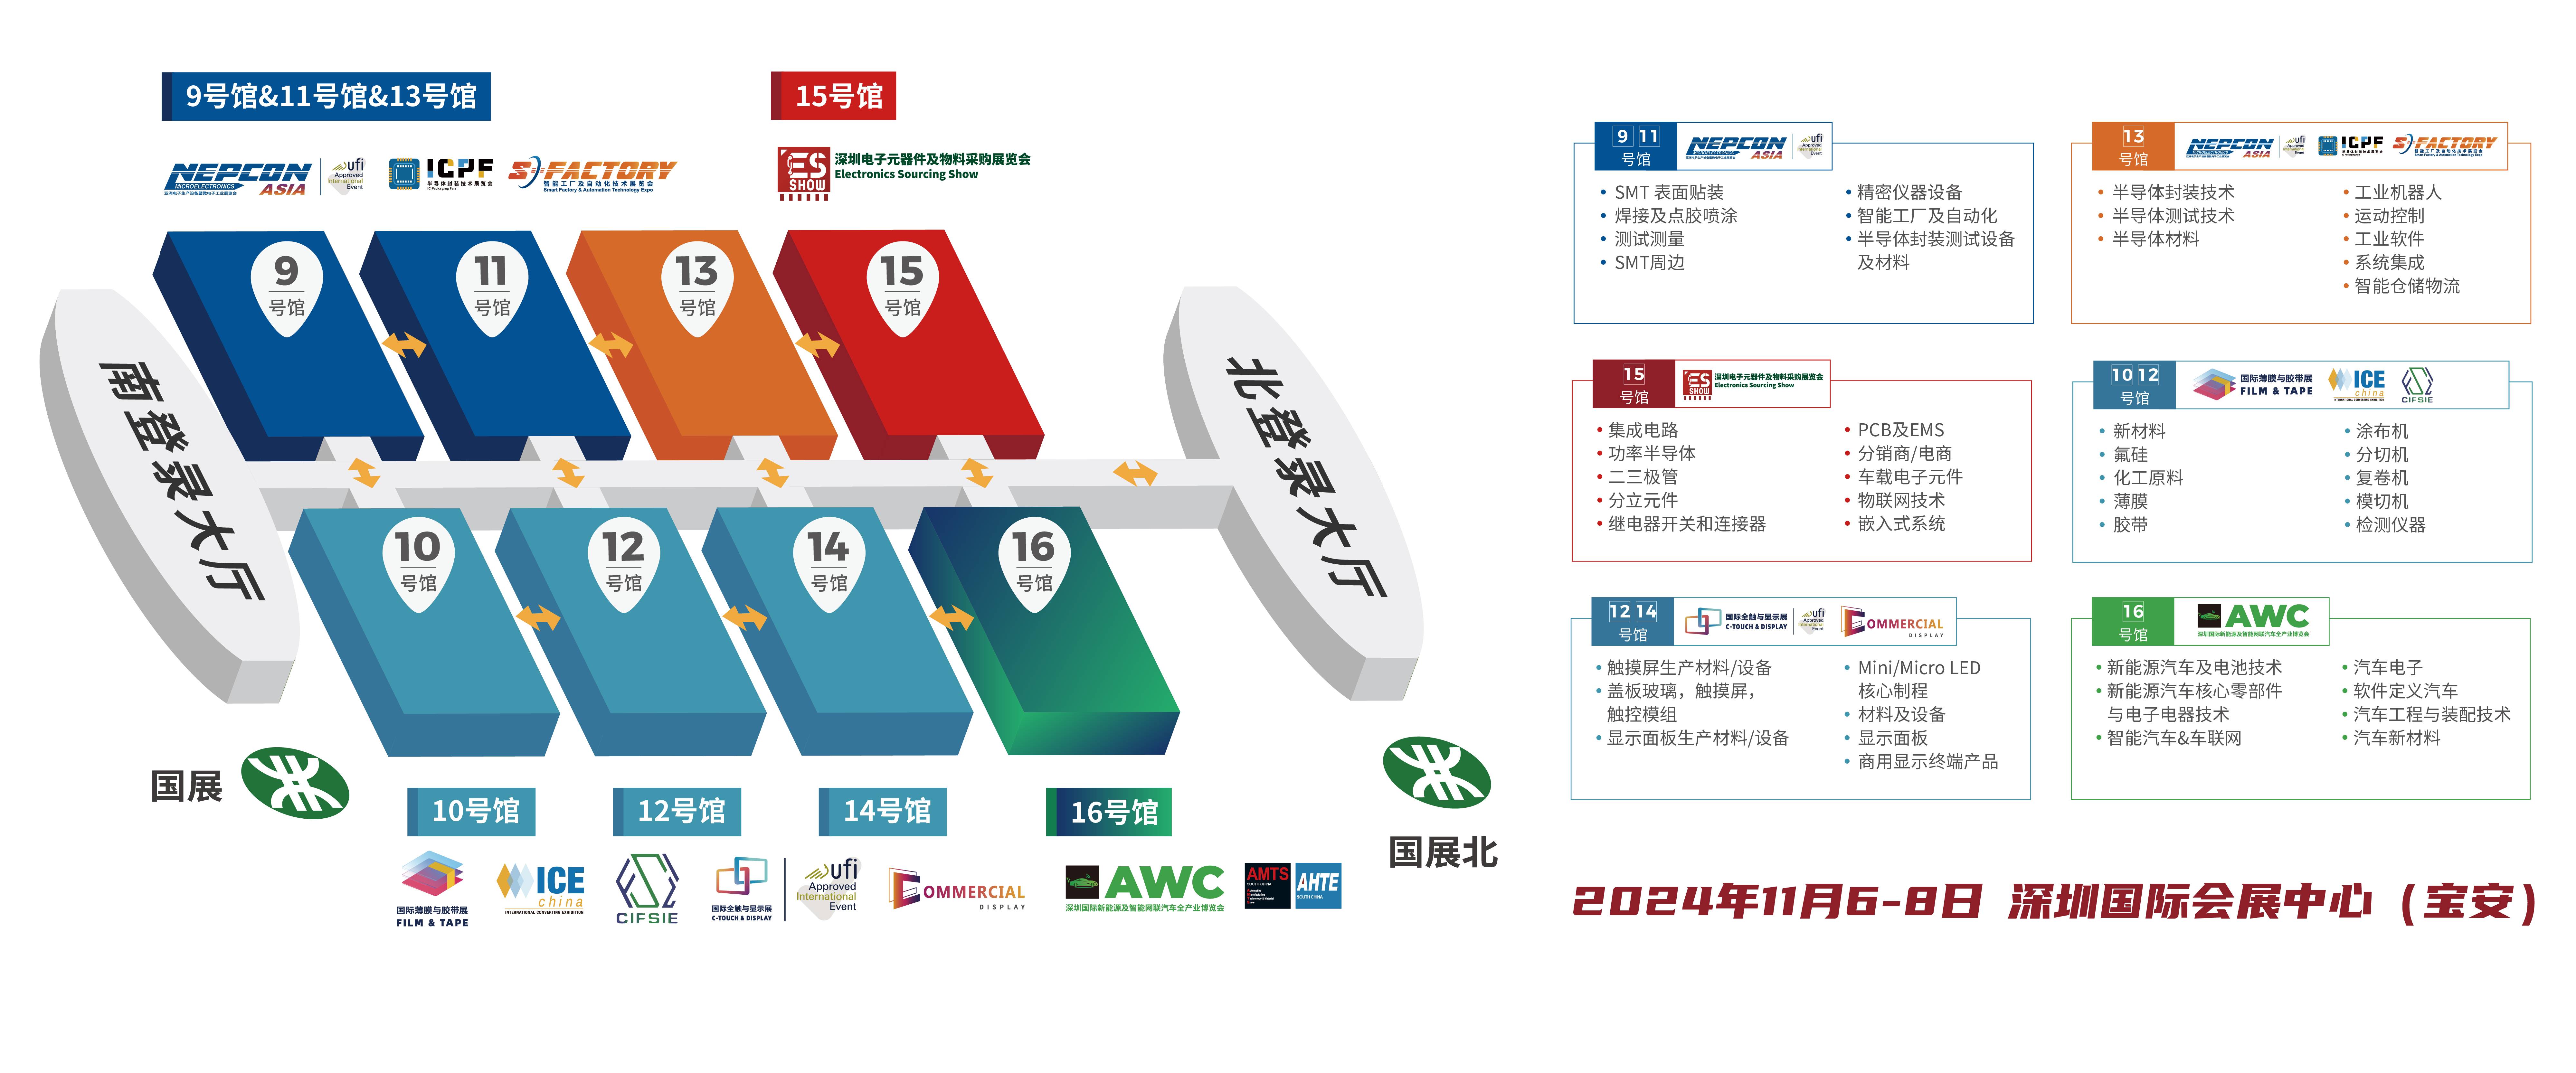 深圳电子展 华南电子展 充电桩 碳化硅 氮化镓功率器件